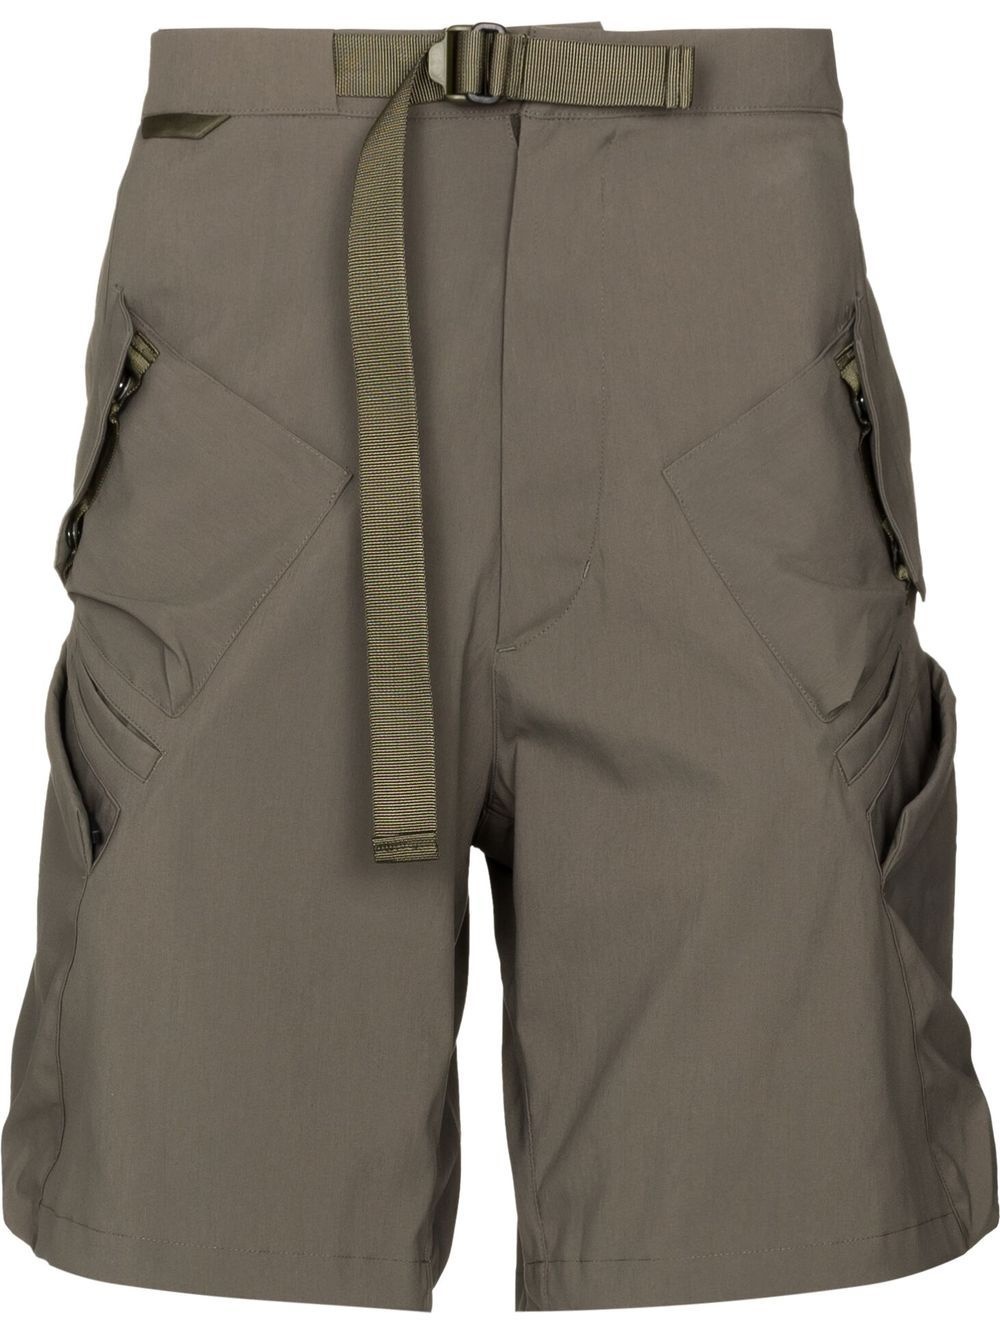 Encapsulated cargo shorts - 1